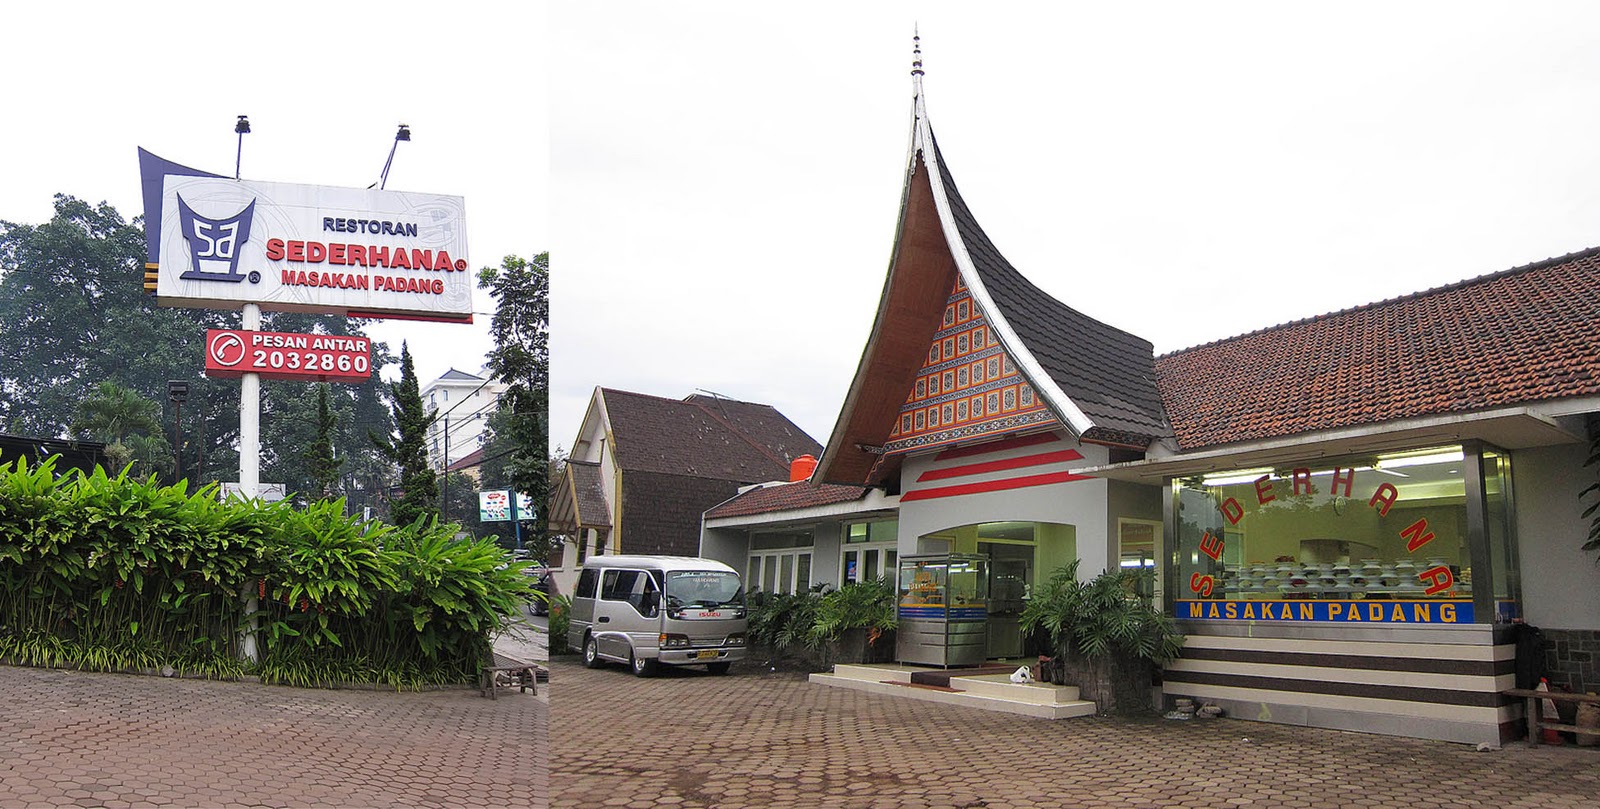 toothpickandsandal - We Travel We Eat: Bandung, Indonesia